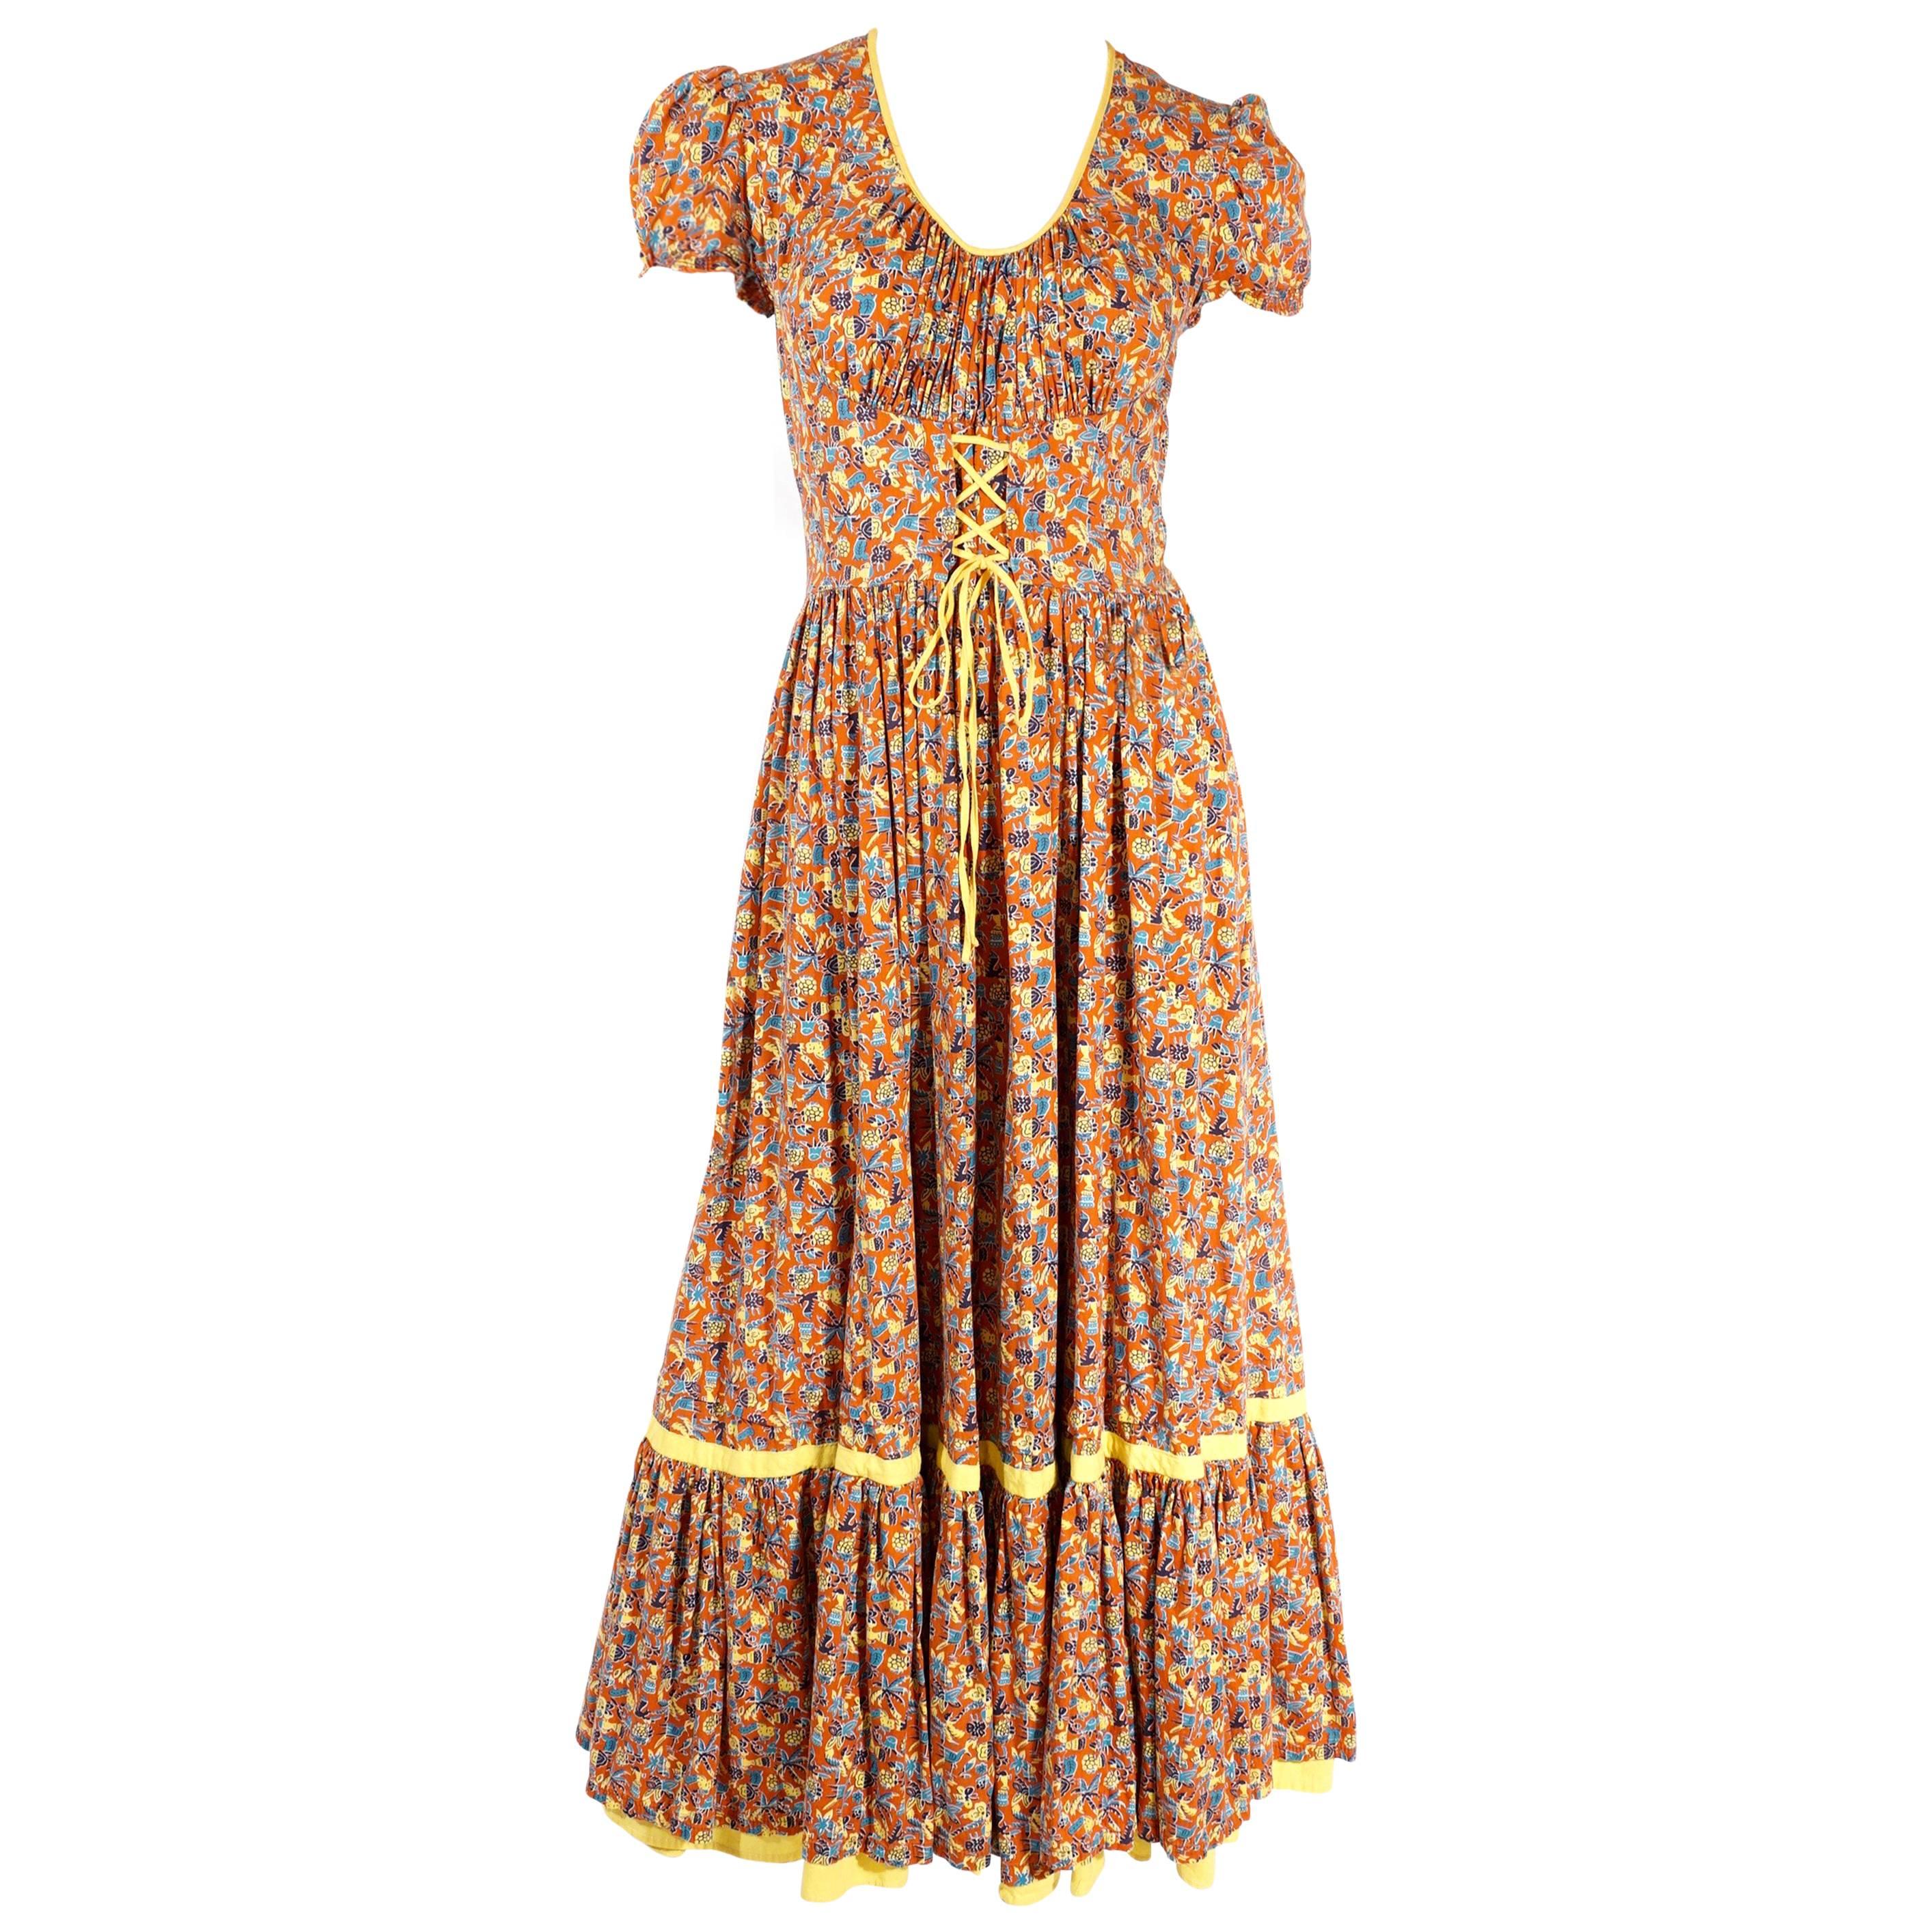 1930s Full Length Summer Print Dress